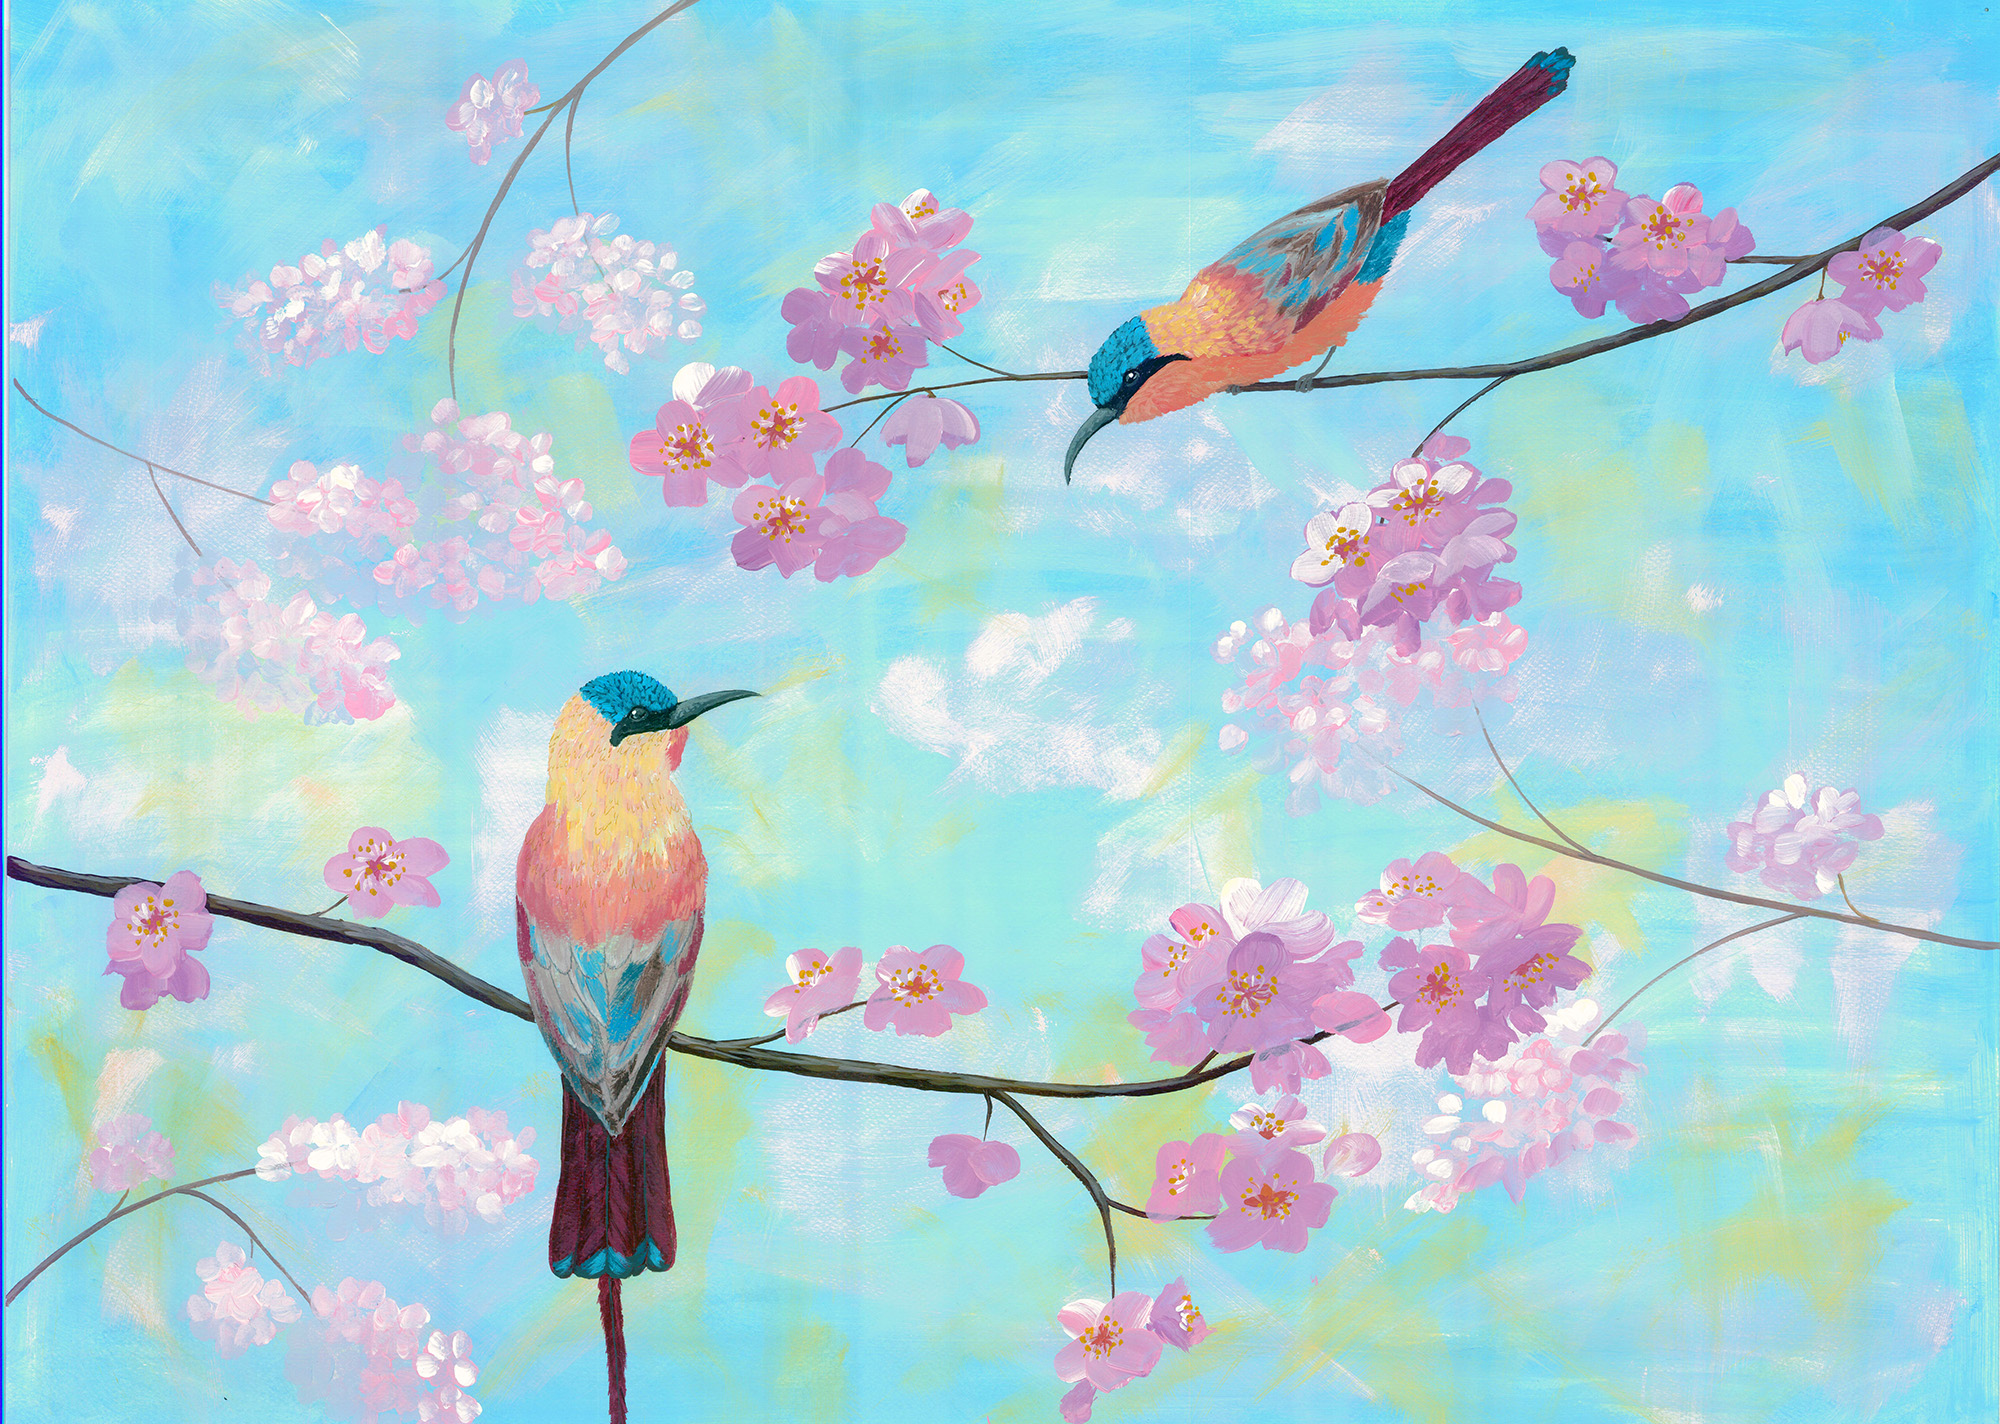 Spring birds painting by Tatyana Bondareva